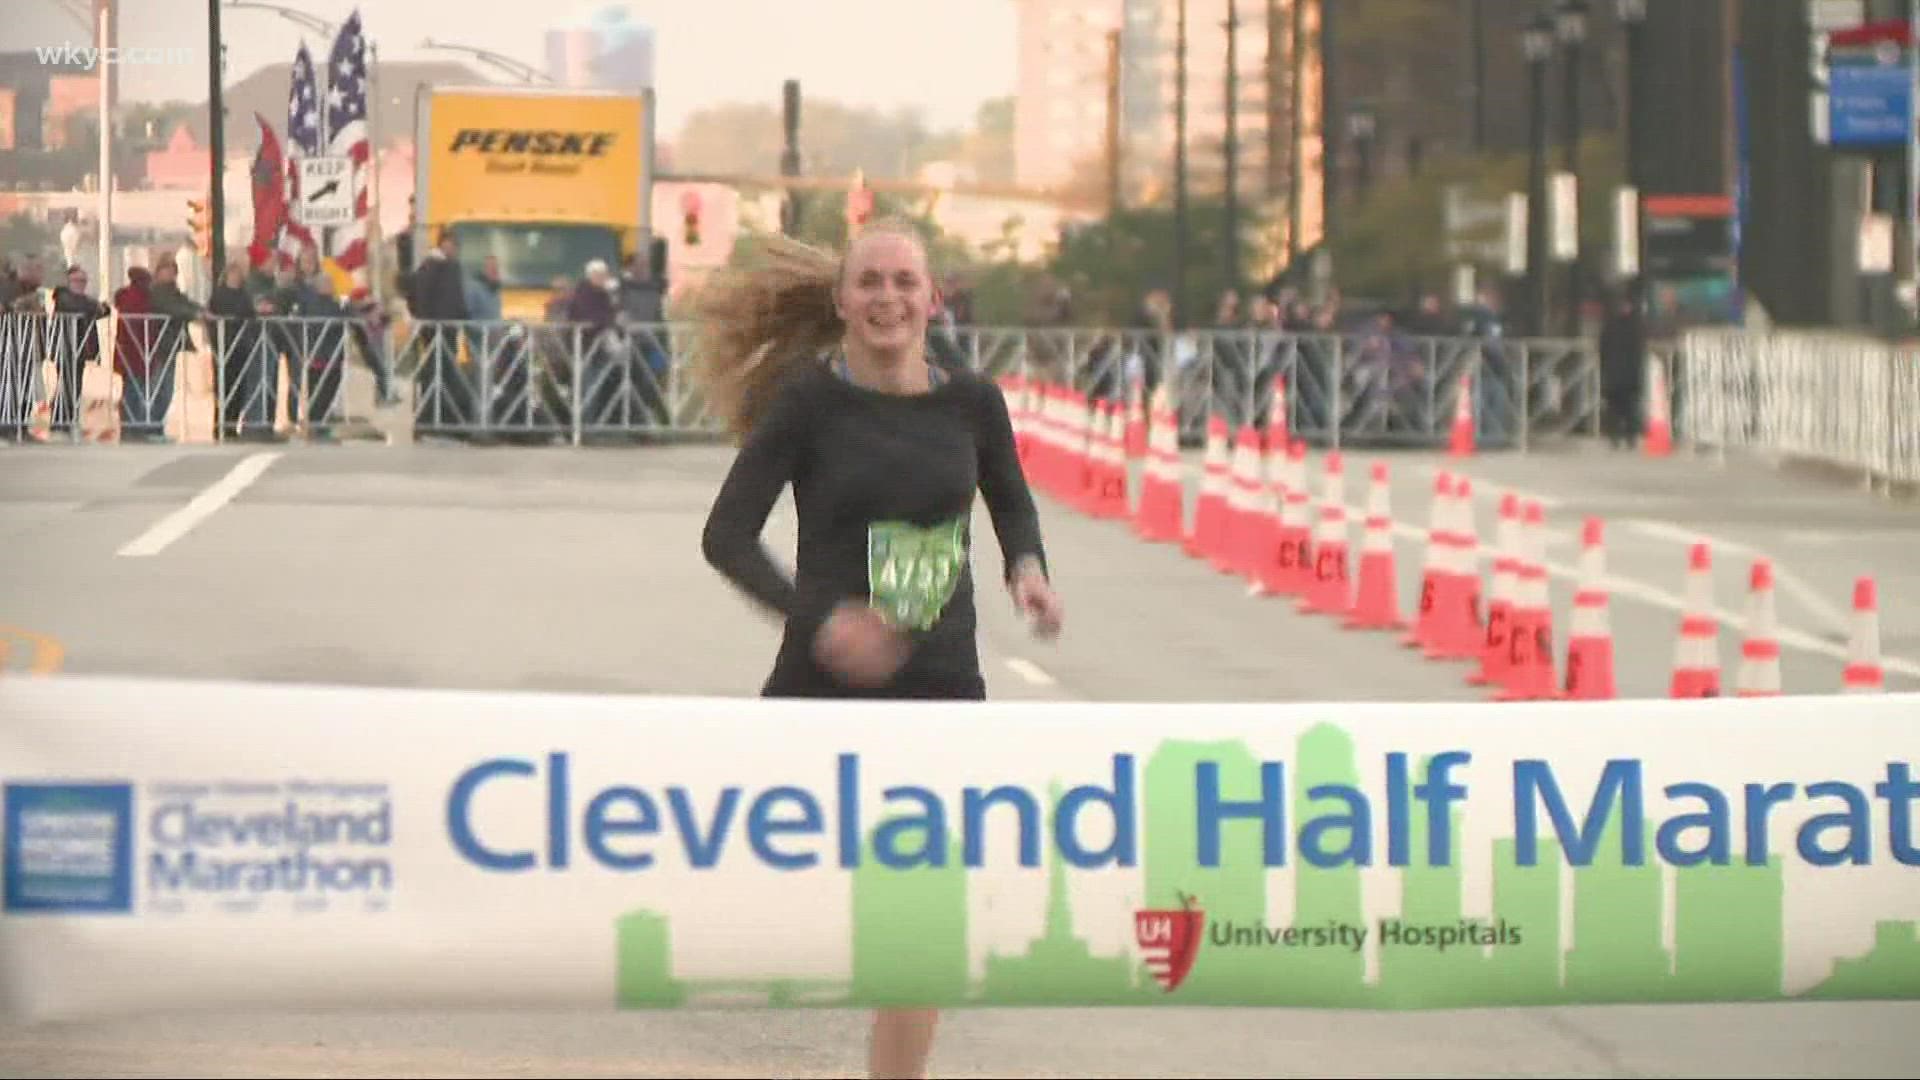 An Update From The Cleveland Marathon With The Half Marathon Winner!